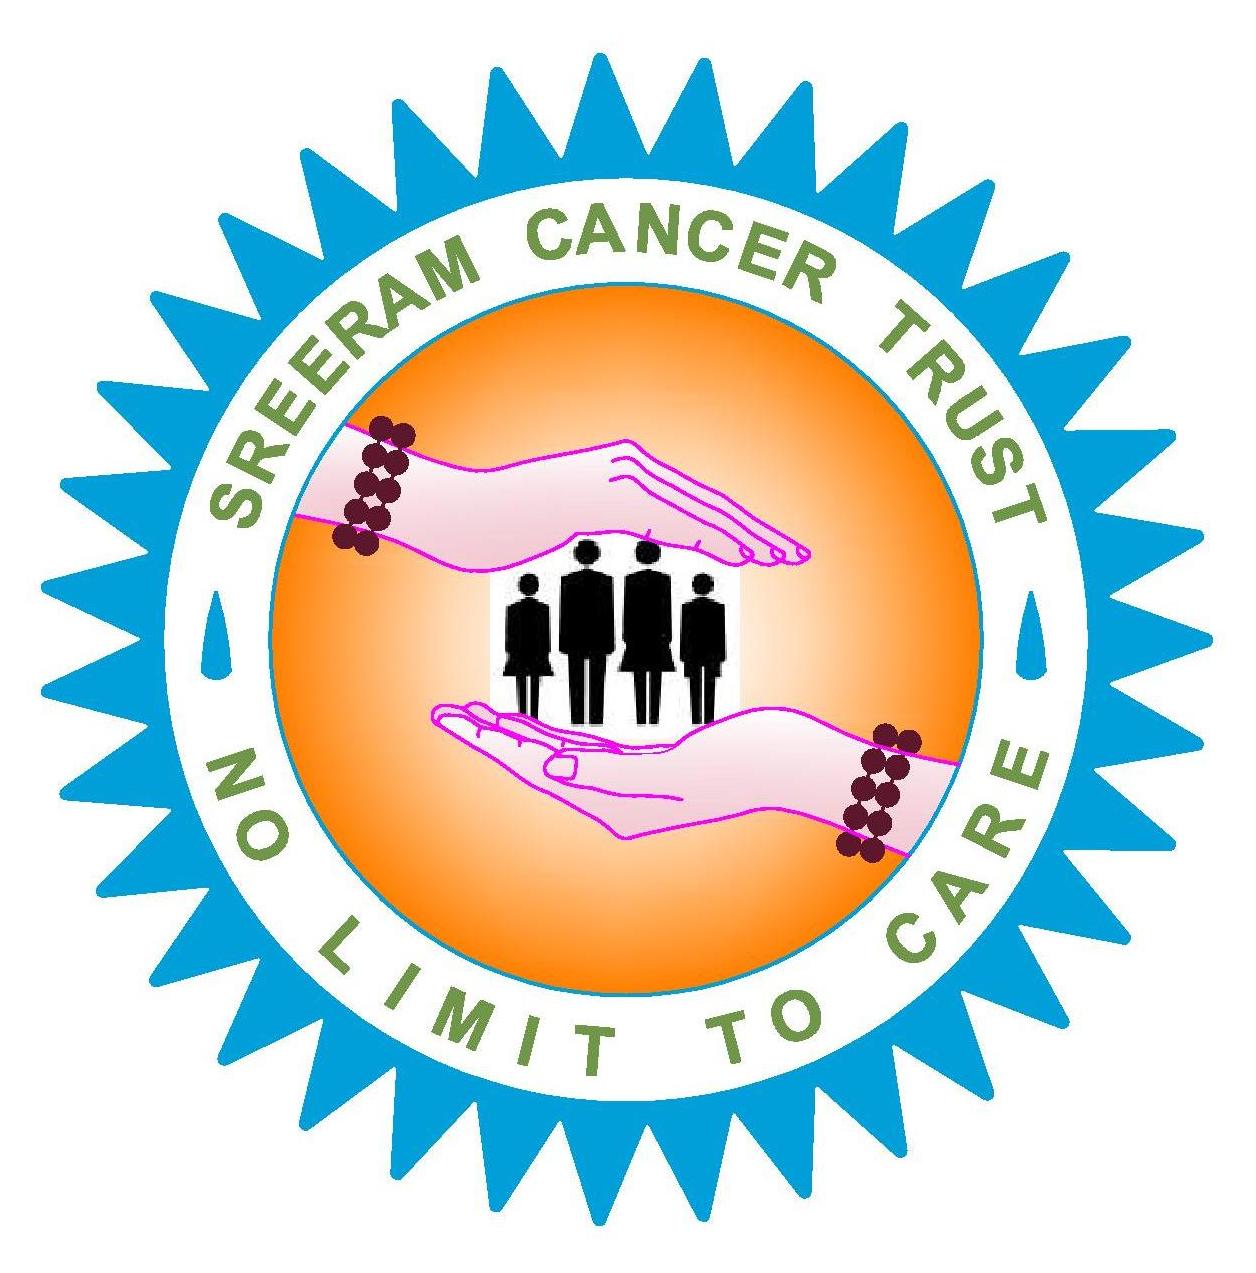 Sreeram Cancer Trust